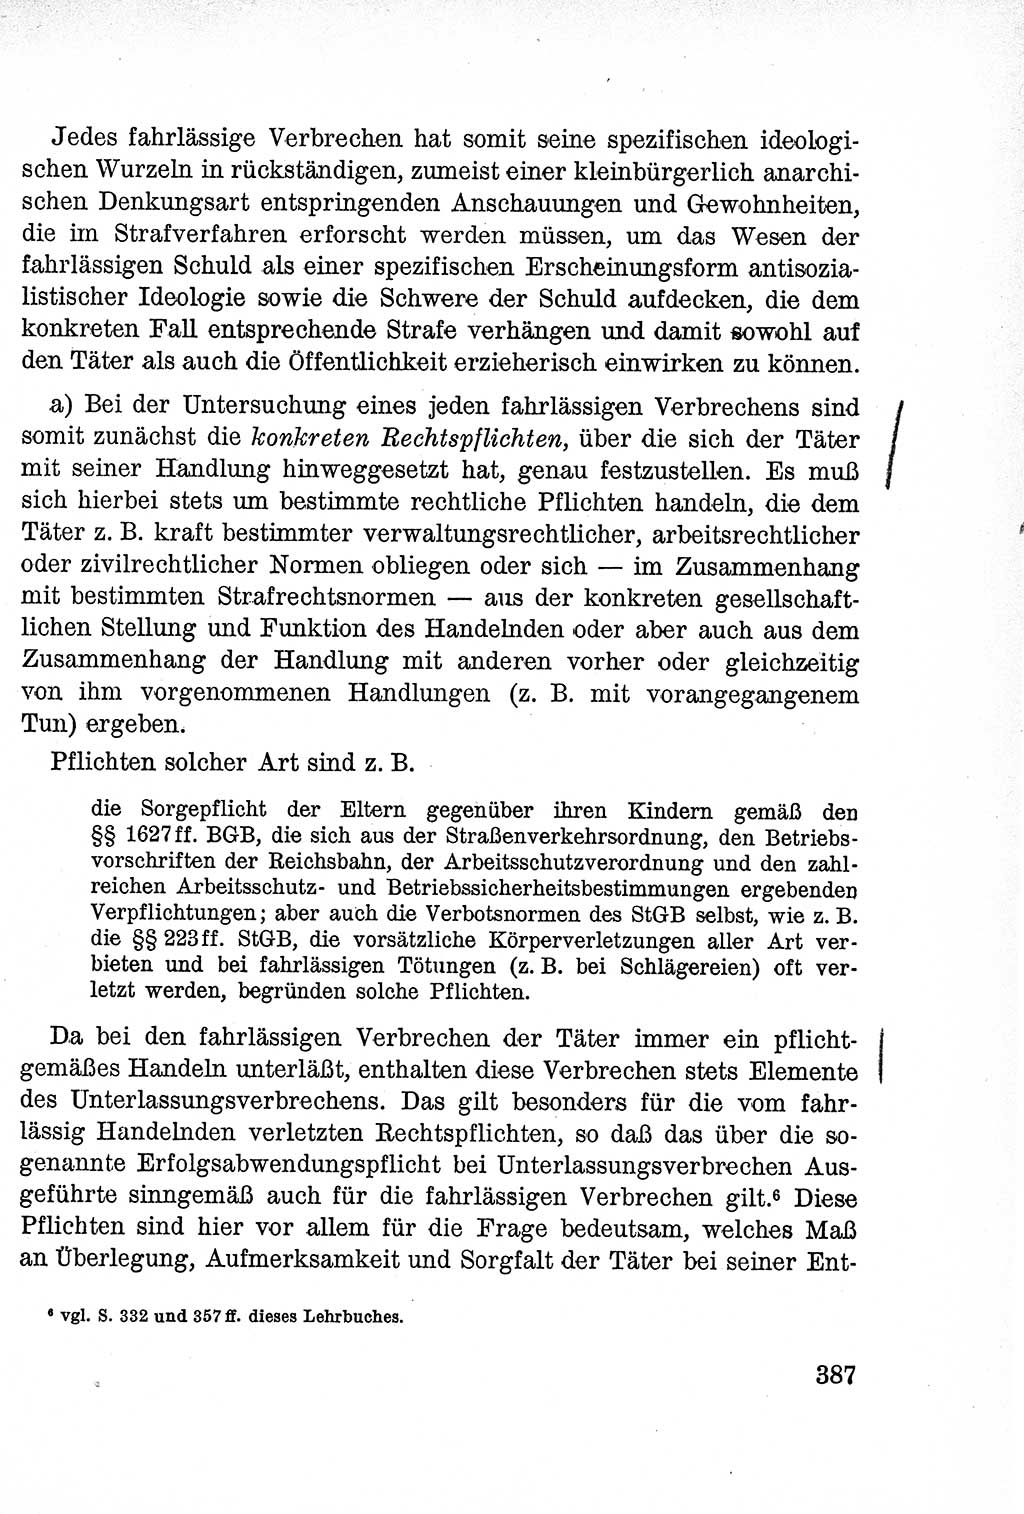 Lehrbuch des Strafrechts der Deutschen Demokratischen Republik (DDR), Allgemeiner Teil 1957, Seite 387 (Lb. Strafr. DDR AT 1957, S. 387)